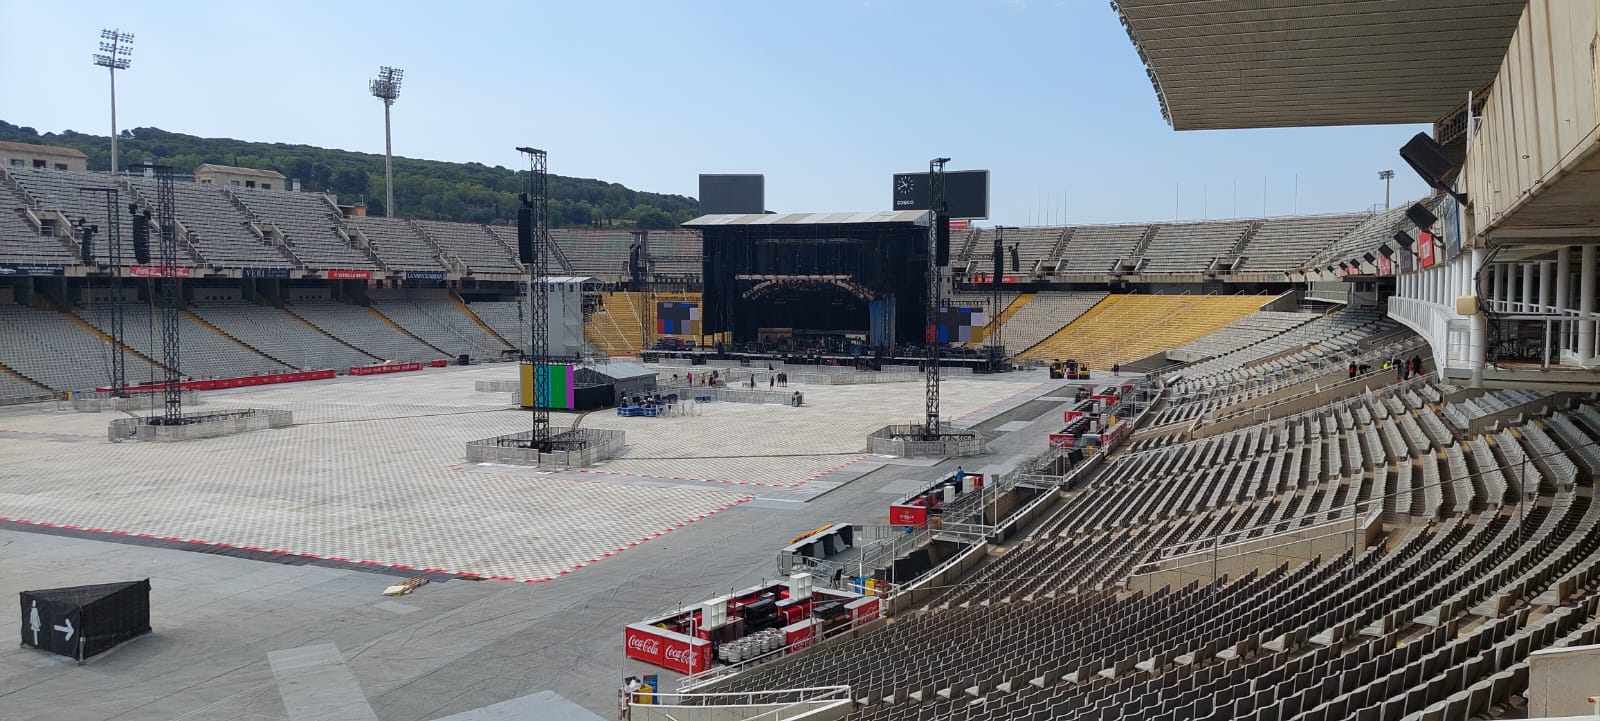 Iron Maiden - escenario Barcelona pic 2